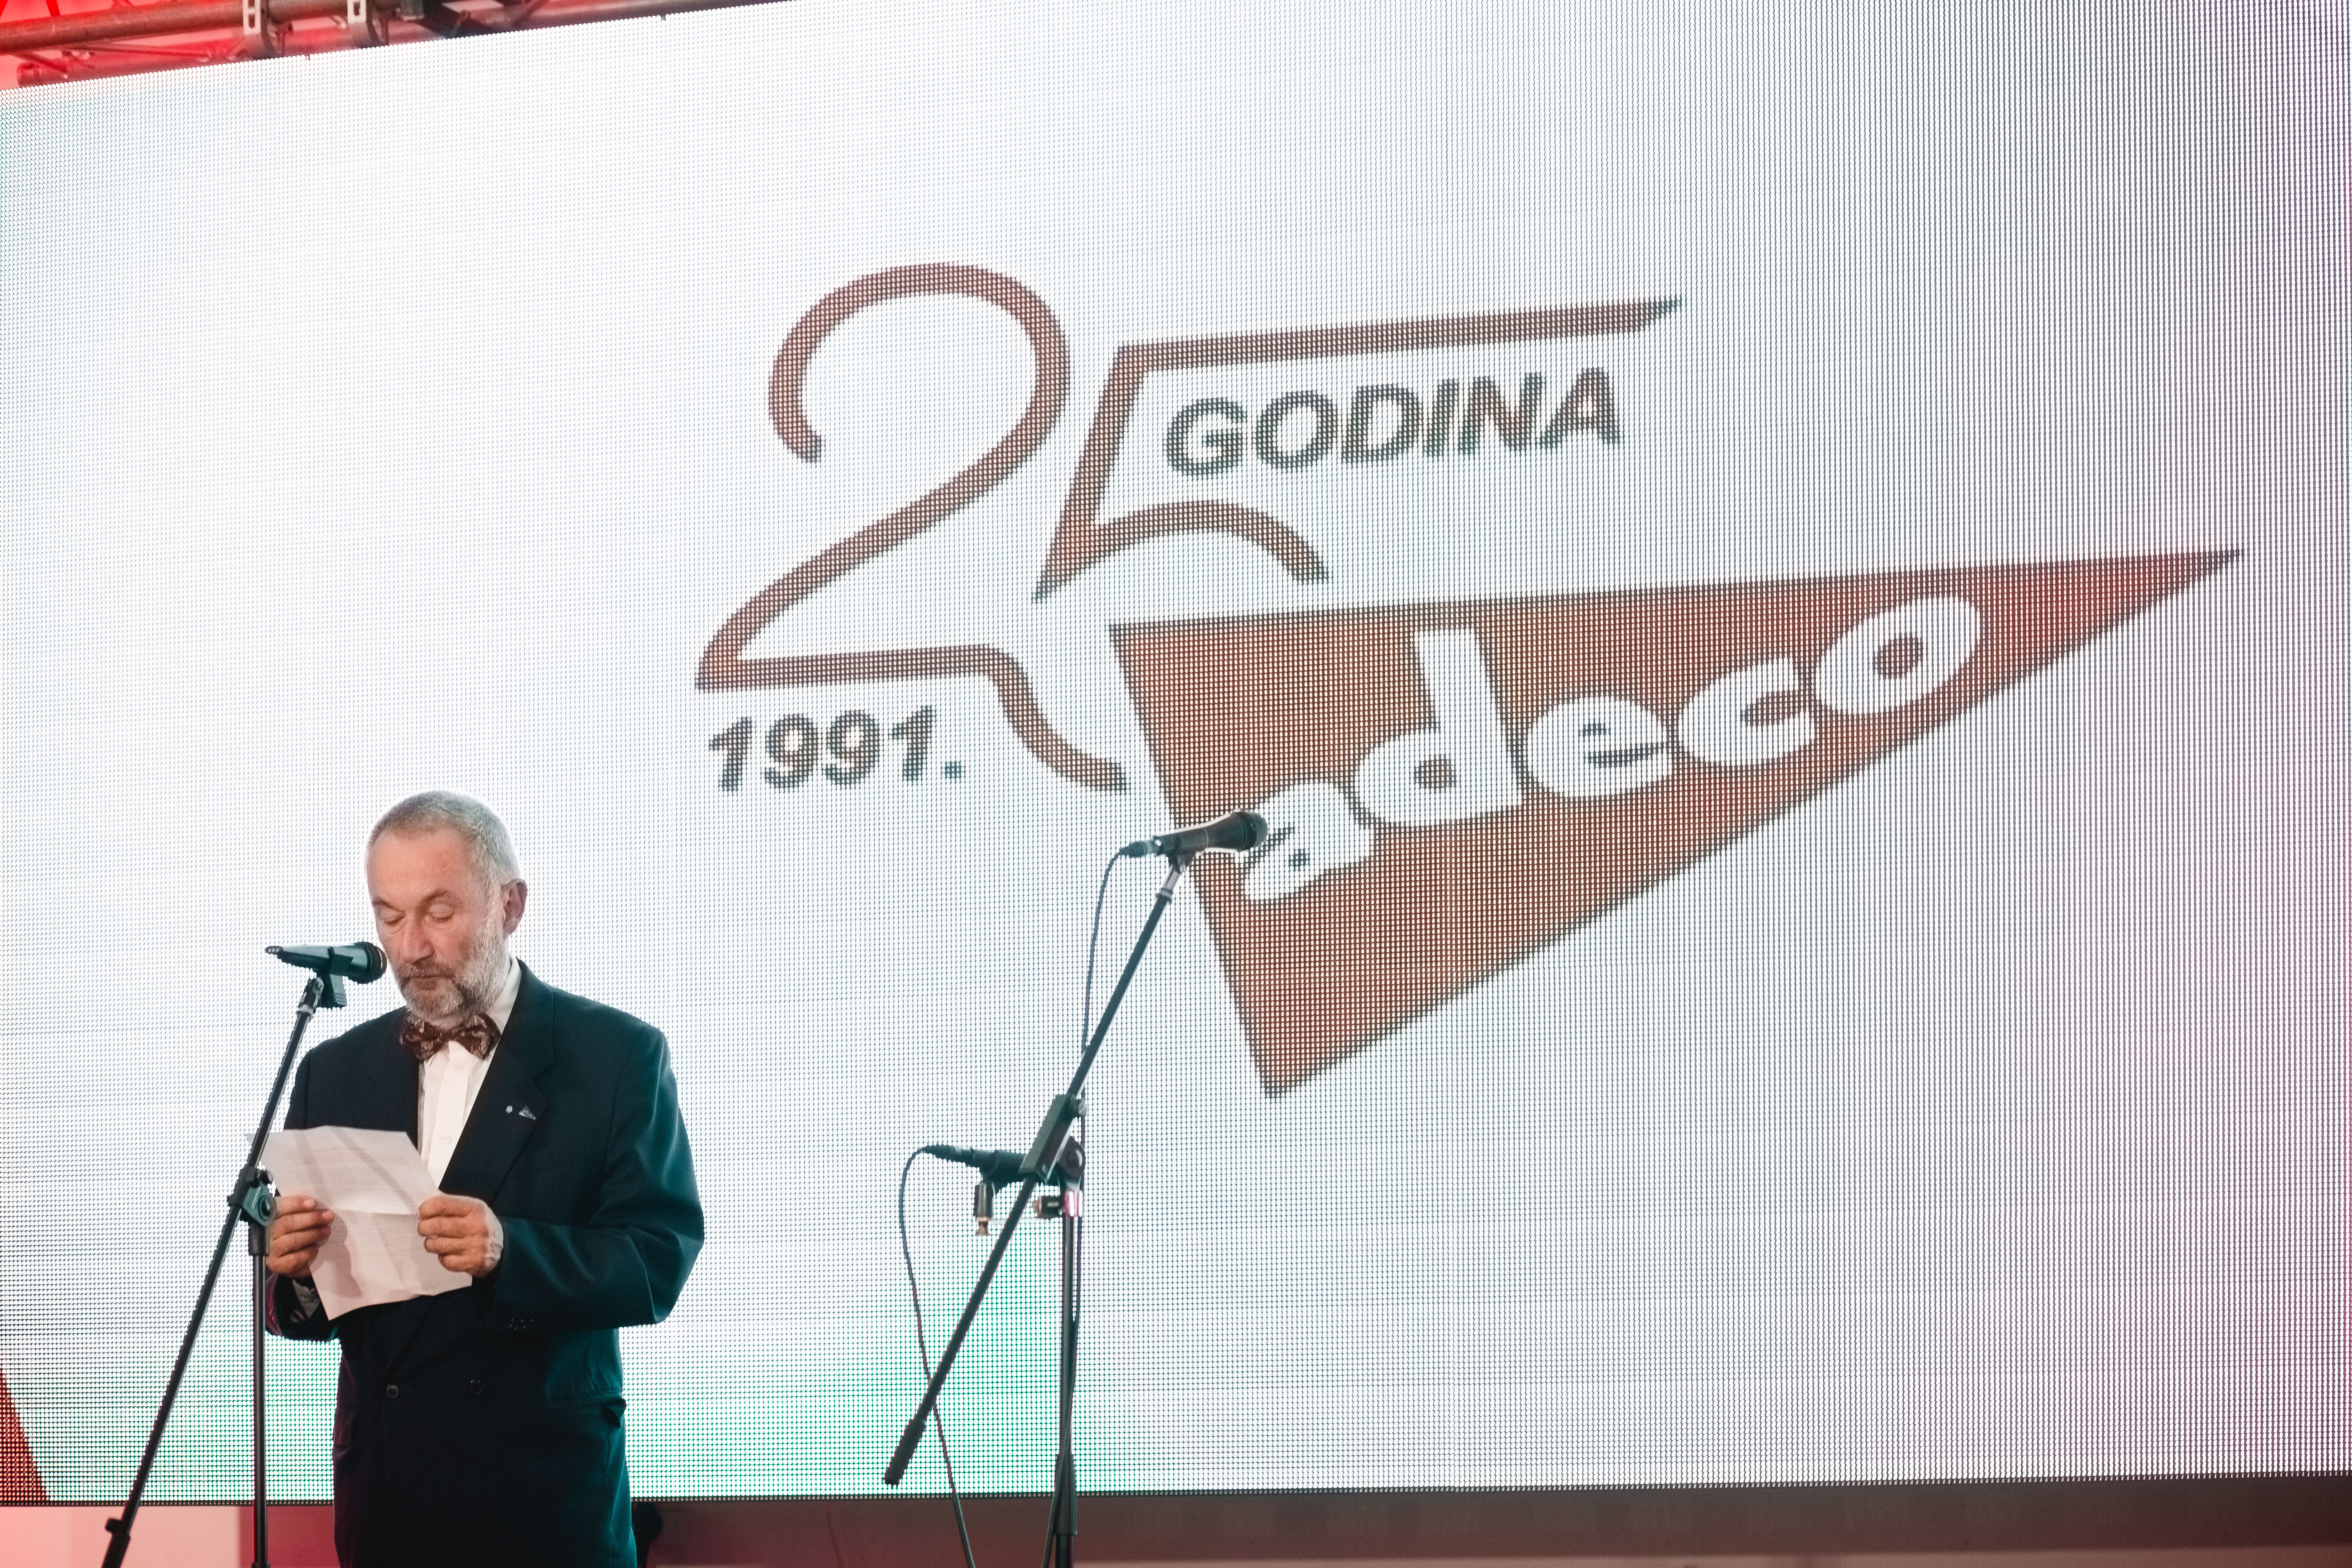 Kompanija Adeco proslavila 25 godina poslovanja